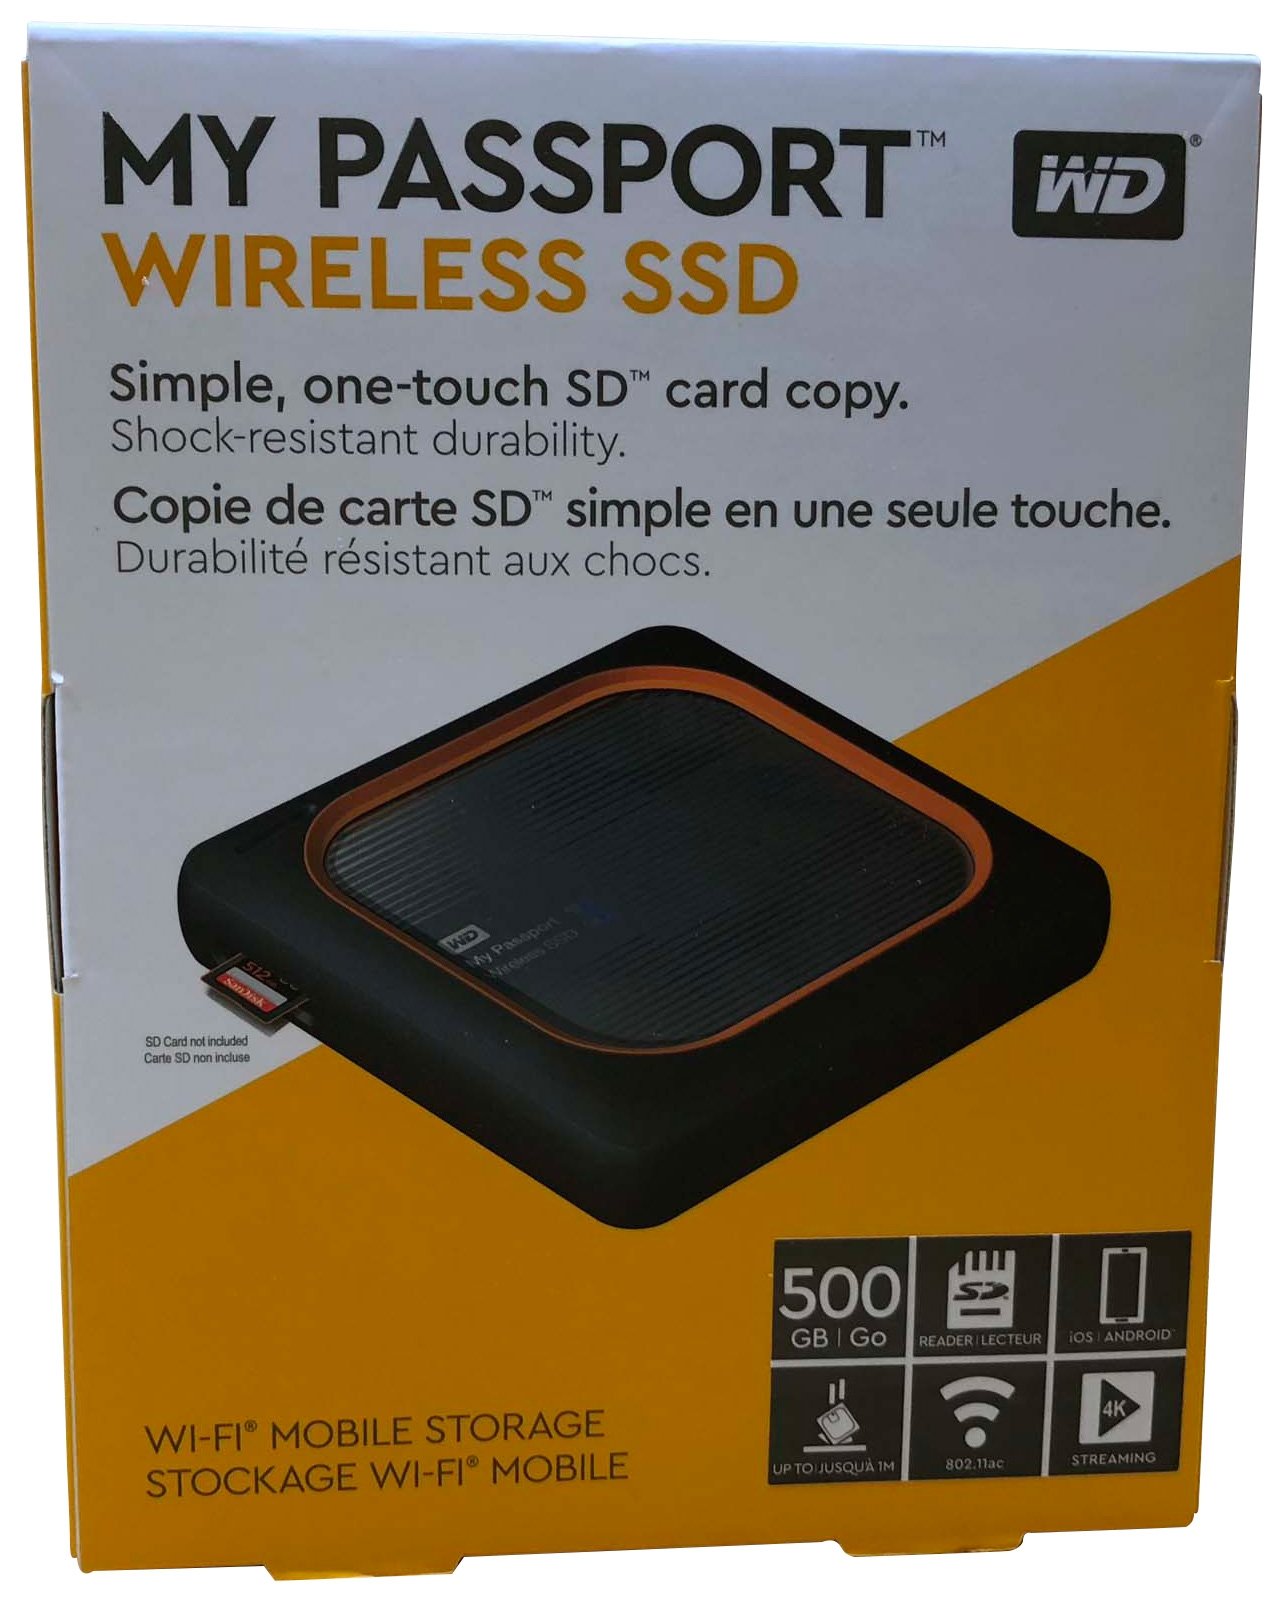 hensynsløs Jakke detektor WD My Passport Wireless SSD 500GB Review